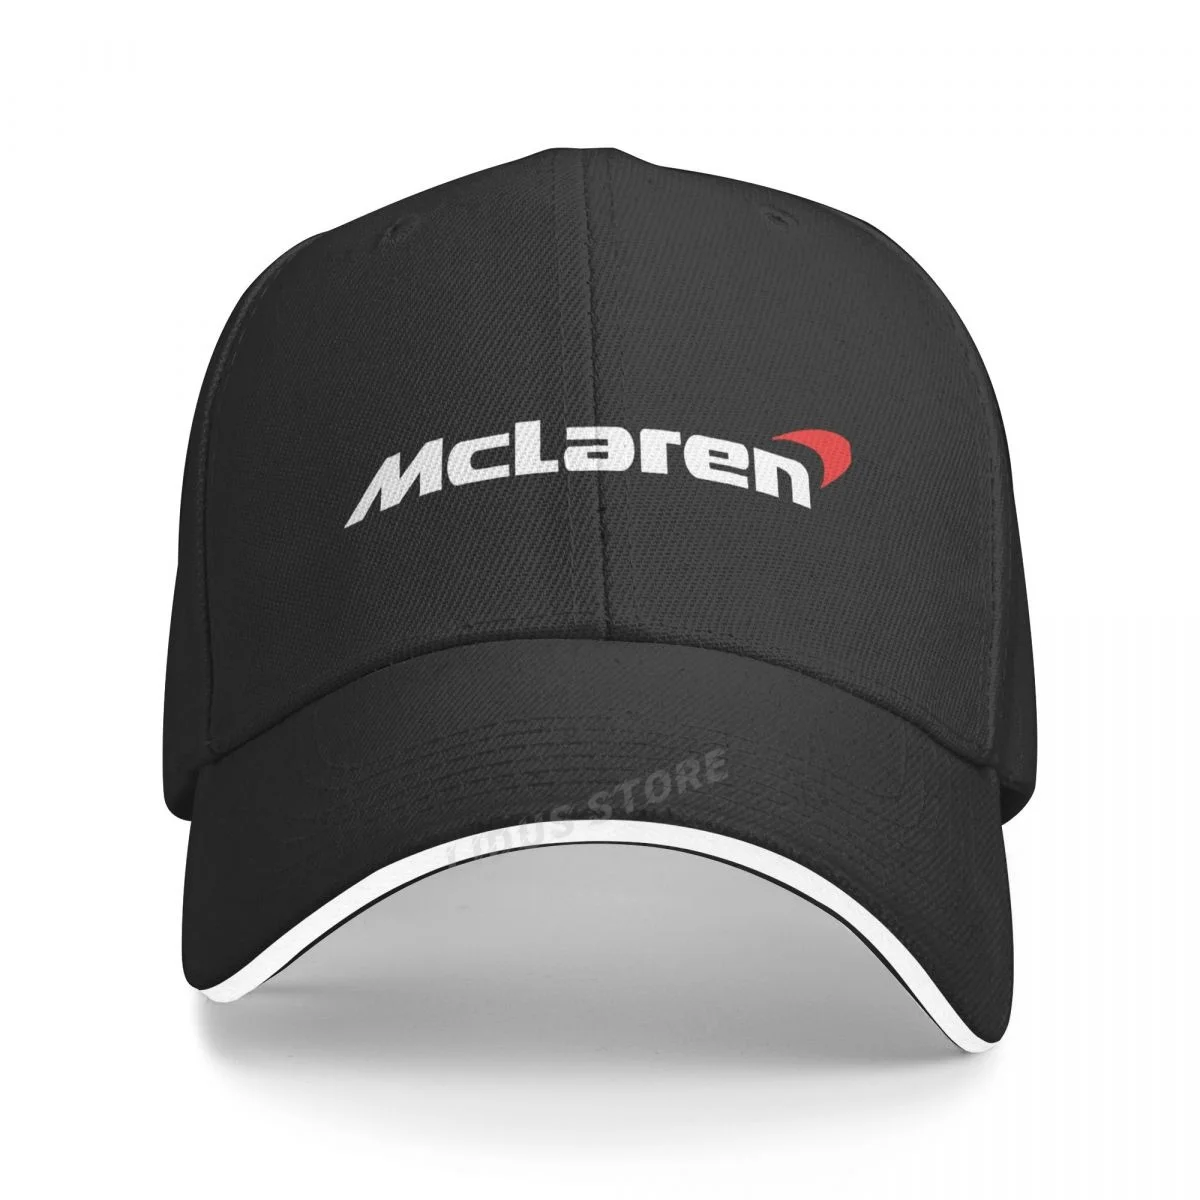 Mclaren Baseball Cap Men Women Adjustable Hats Cool Hat Outdoor Caps